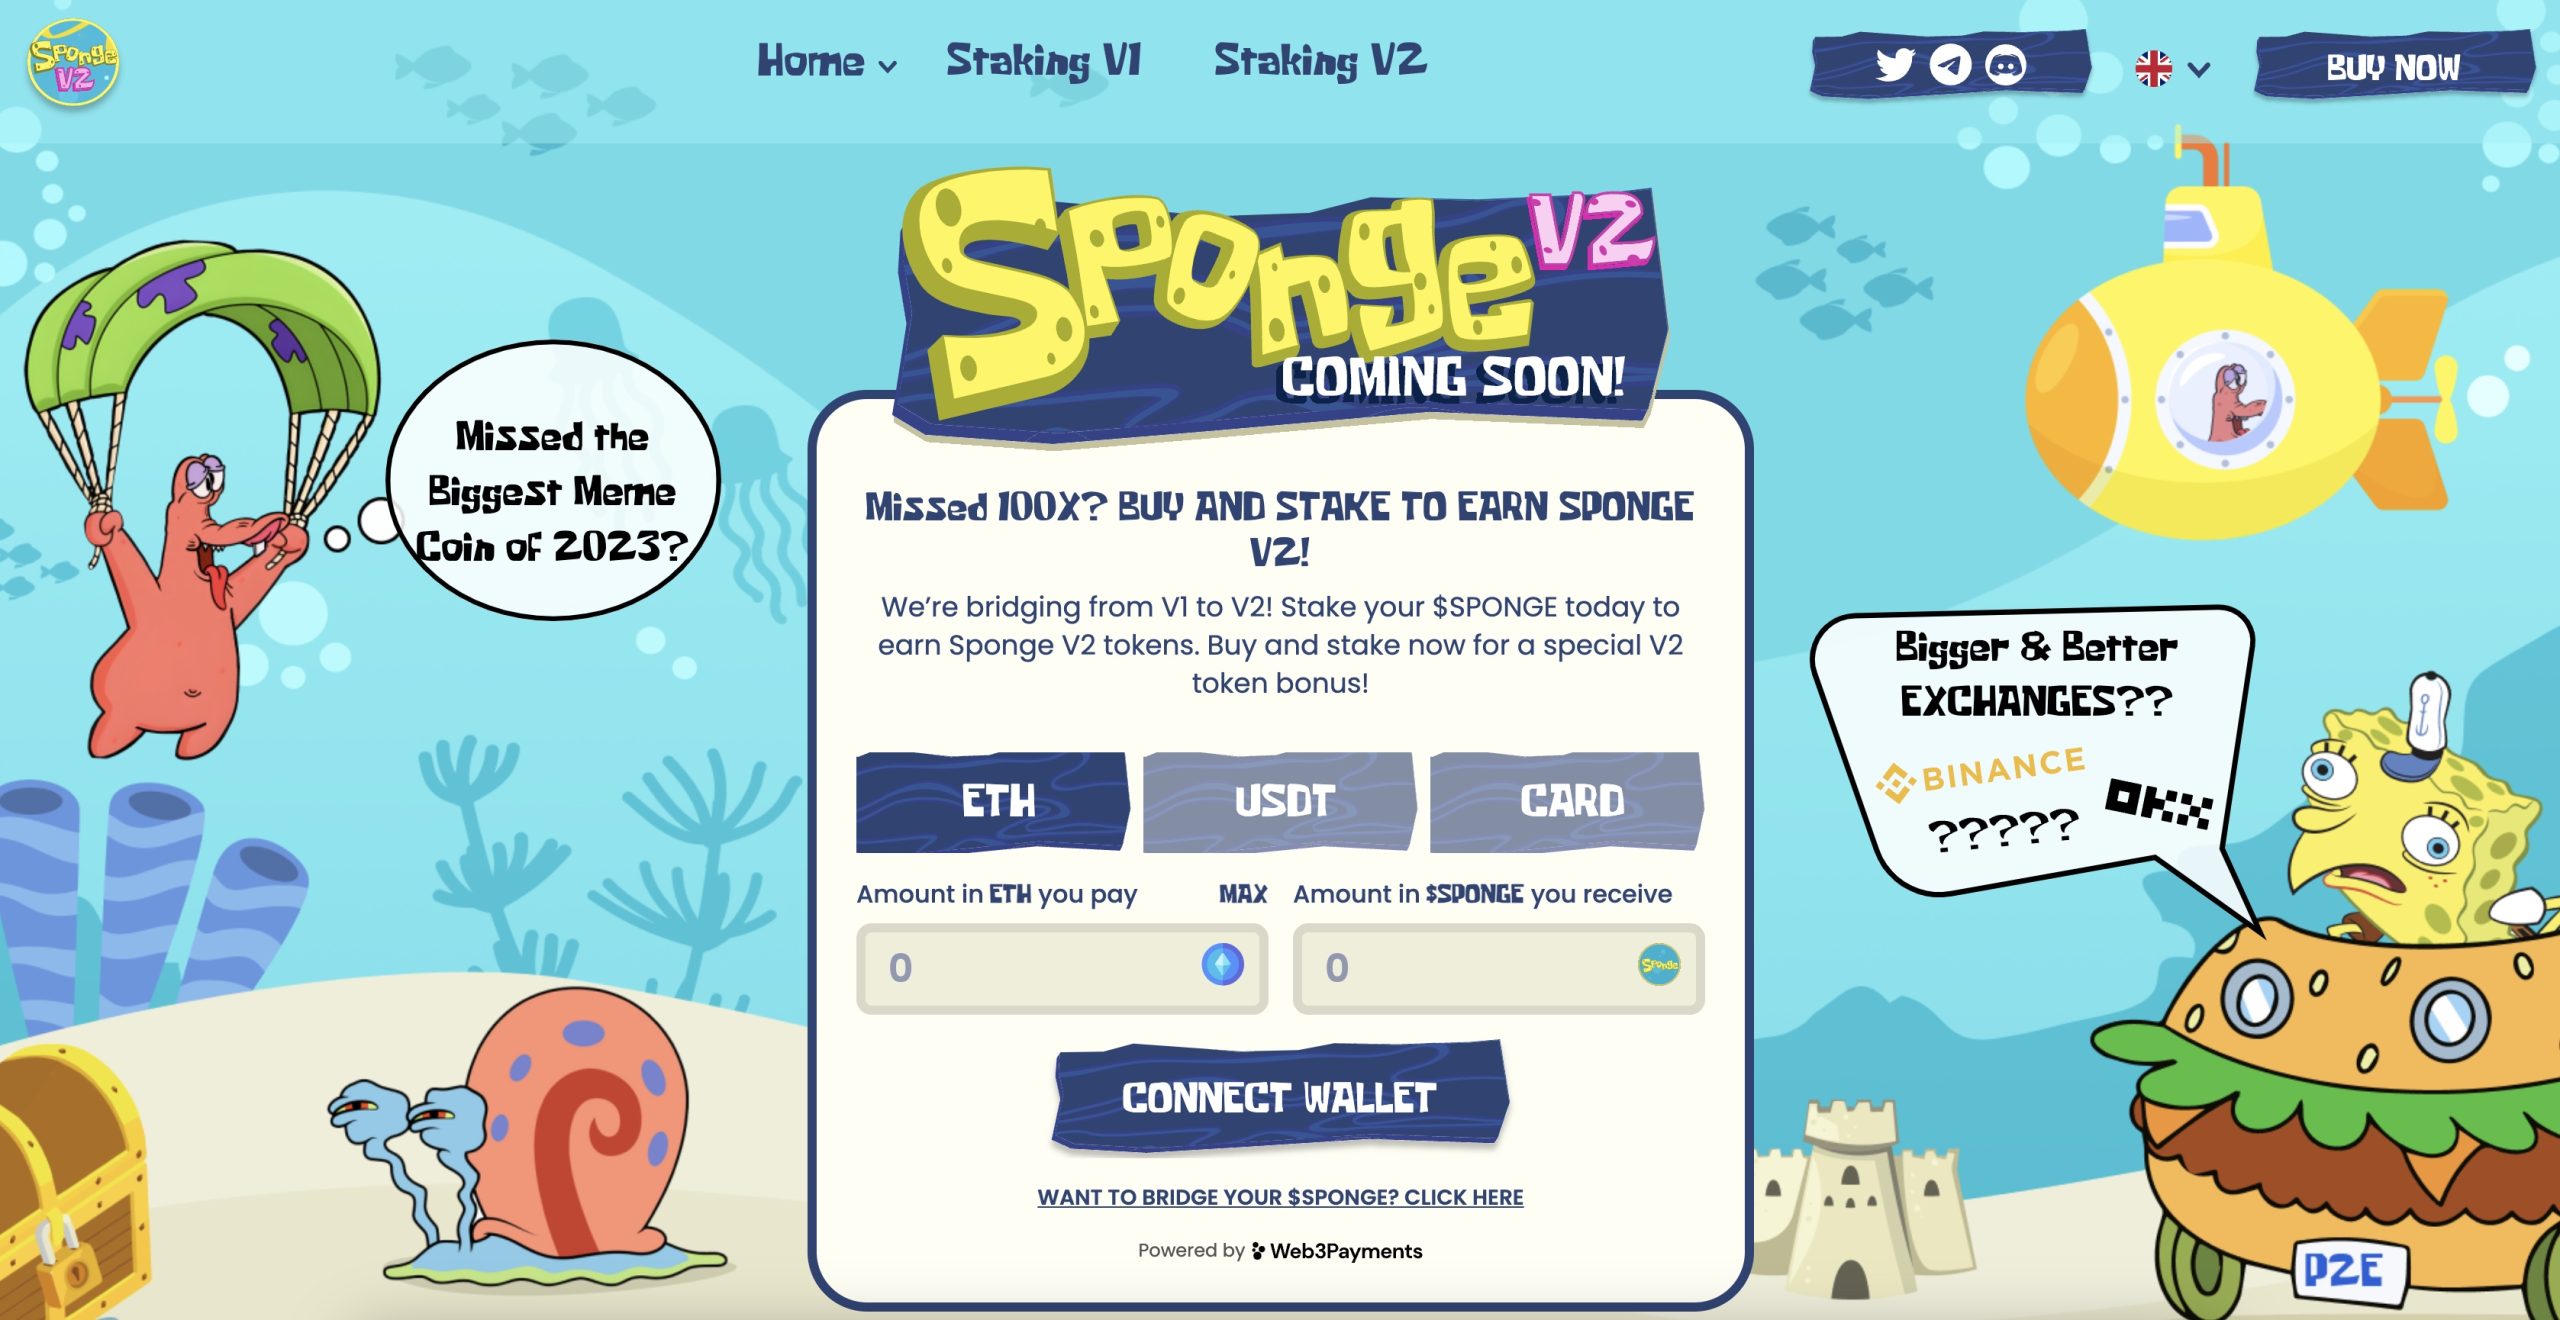 Sponge V2 nettside ny kryptovaluta man kan tjene gjennom å kjøpe og stake v1